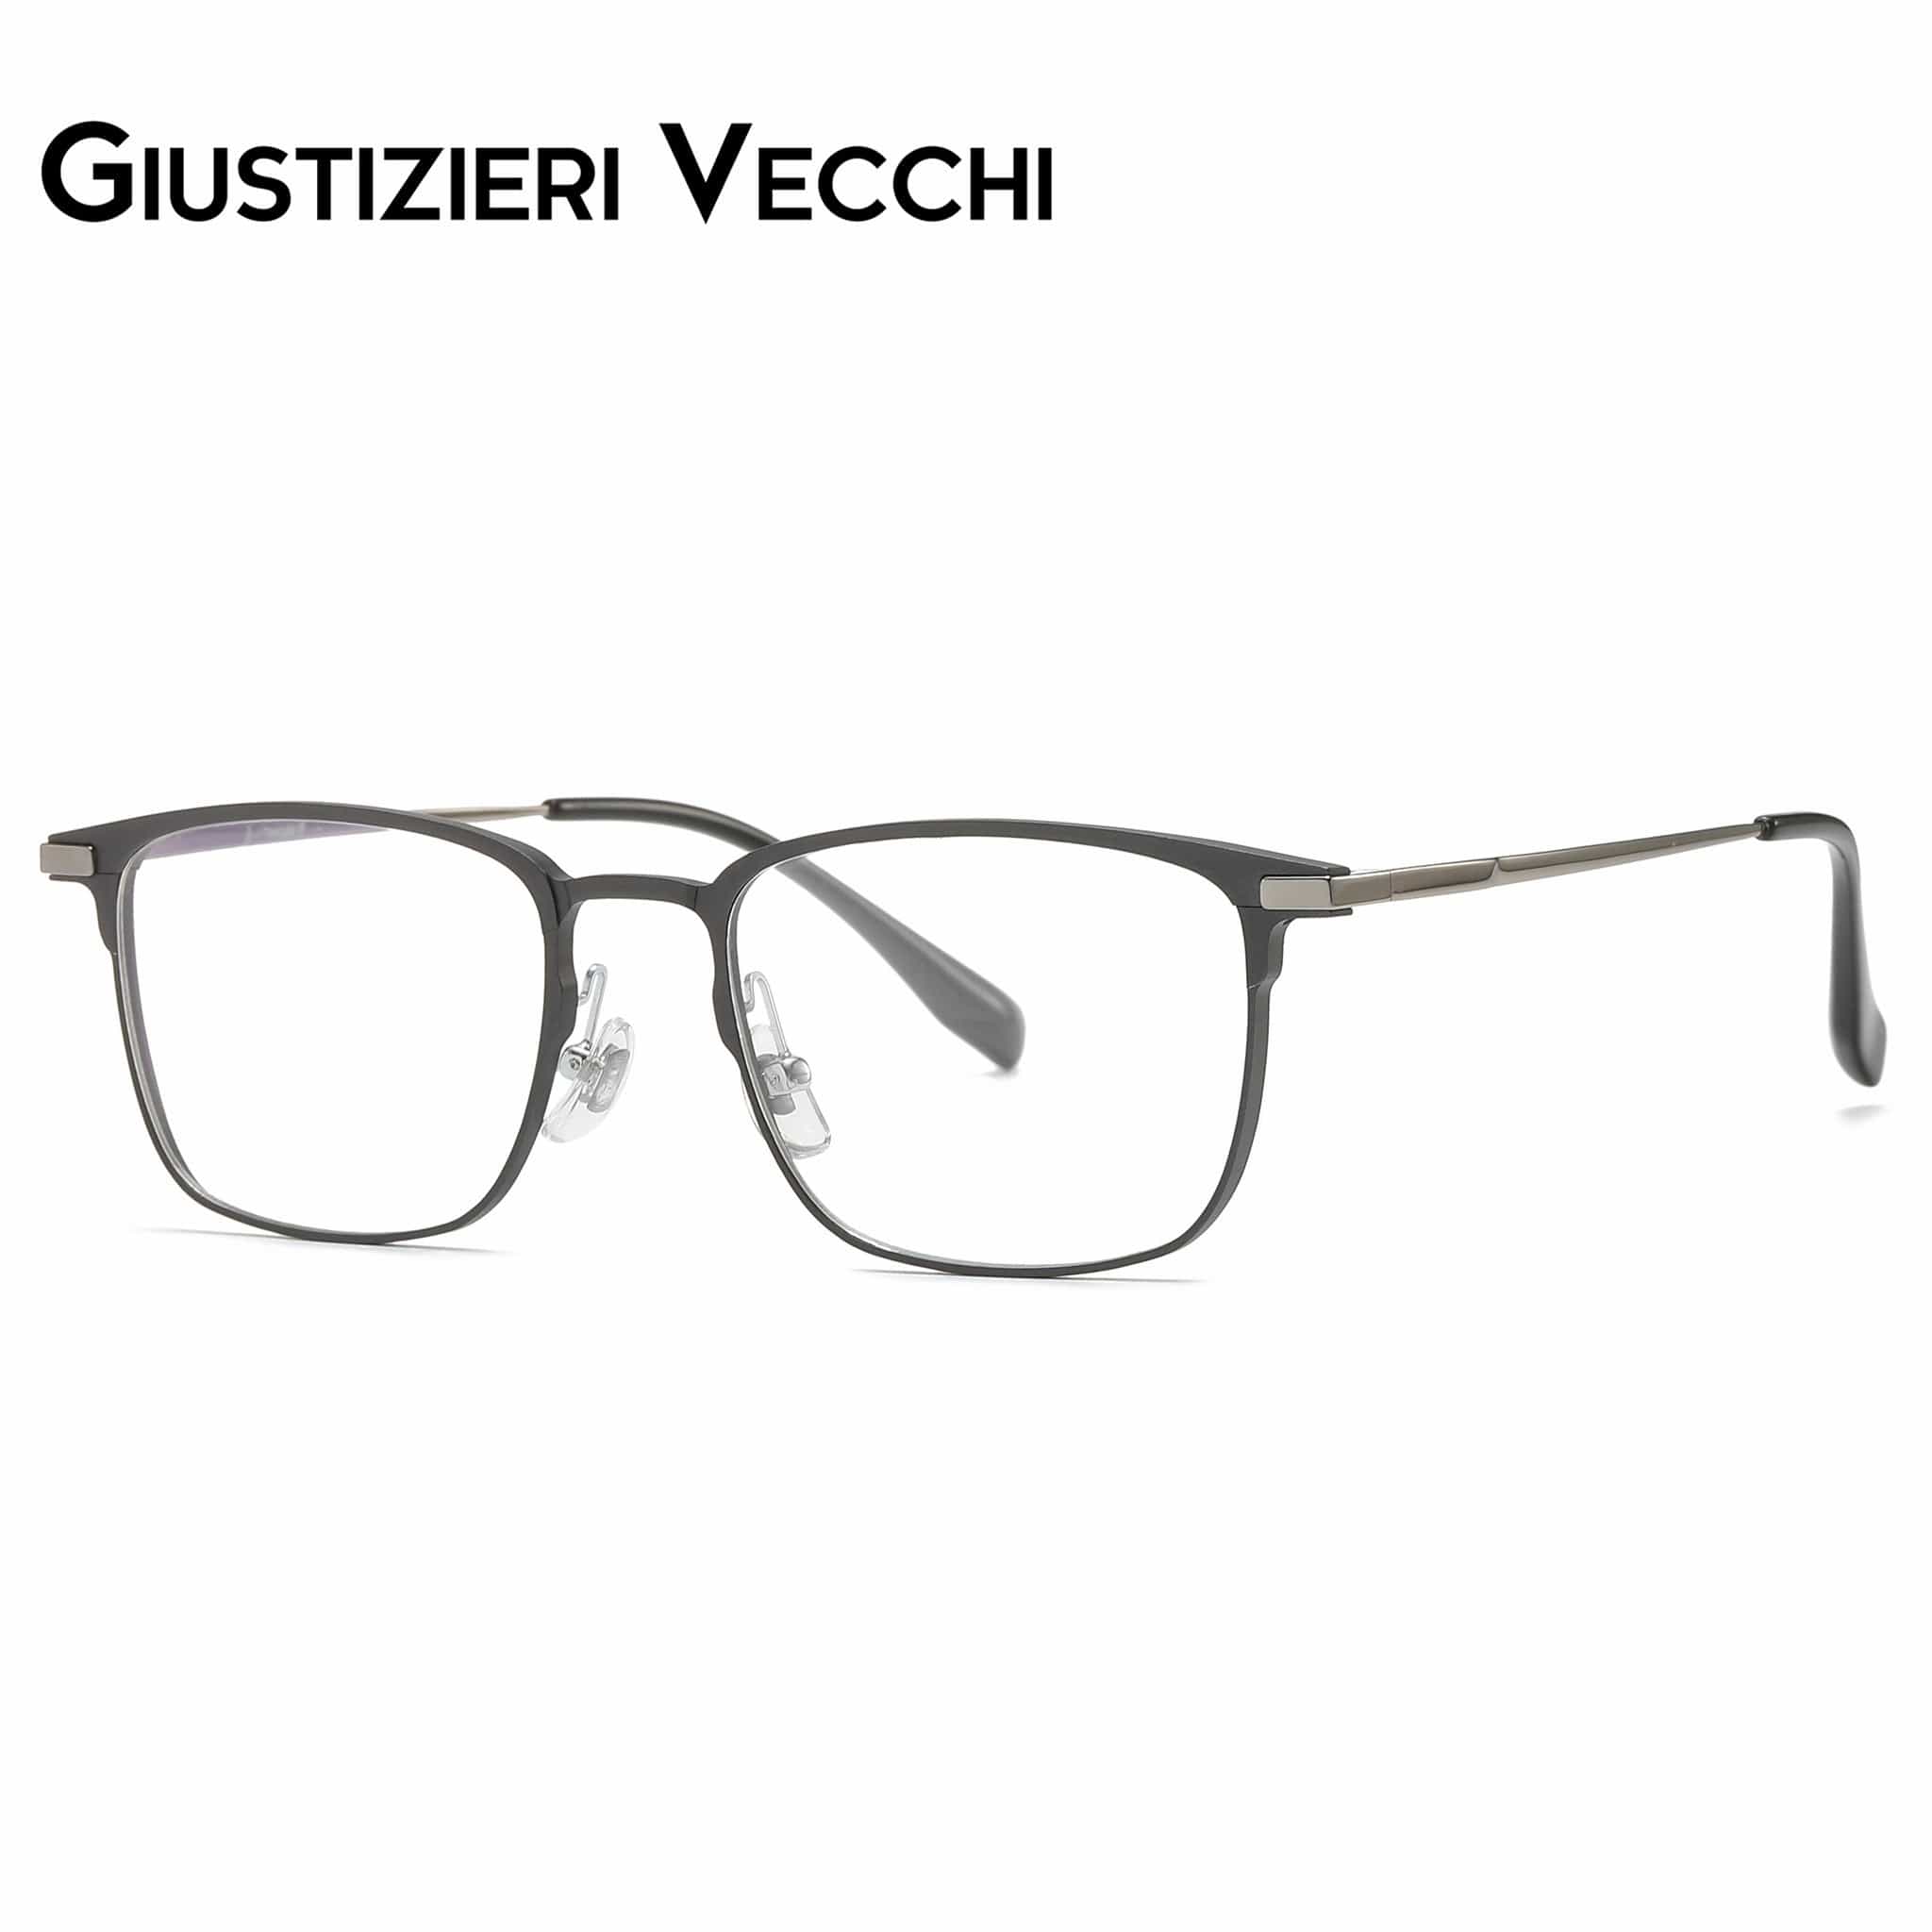 GIUSTIZIERI VECCHI Eyeglasses Nightfall Duo